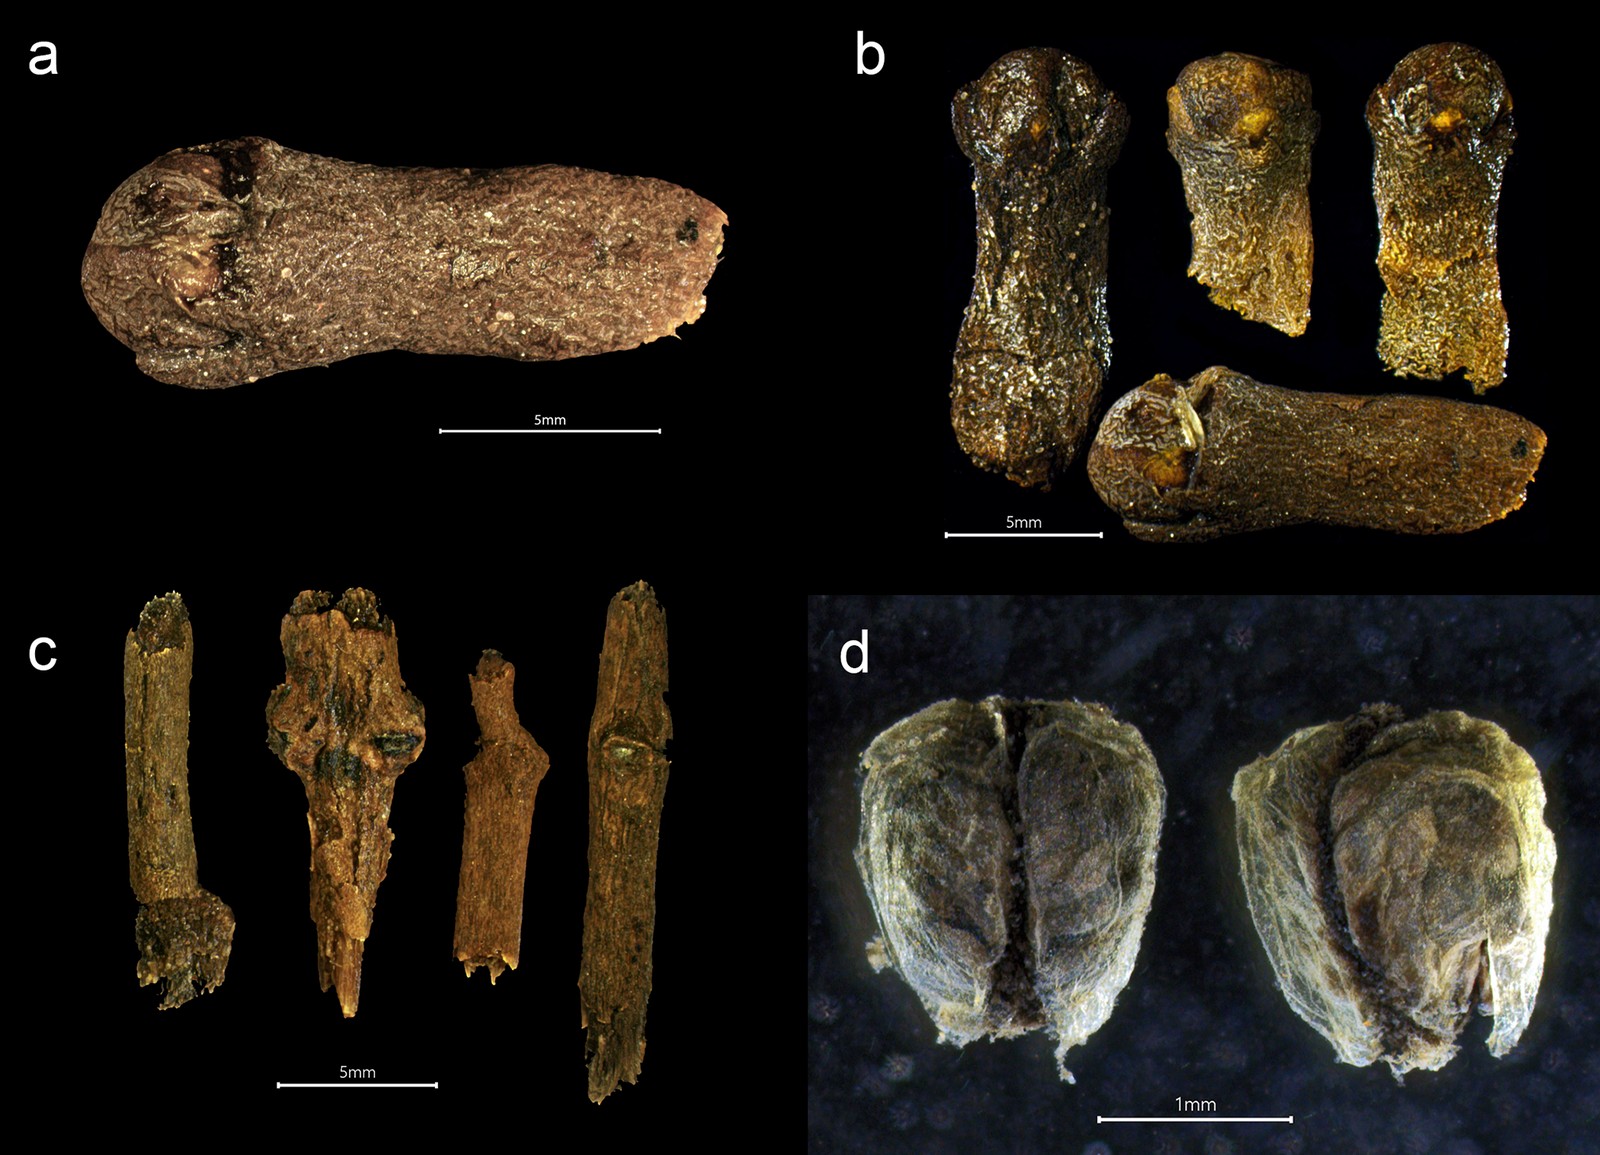 Partes da planta do cravo-da-índia encontradas no naufrágio  — Foto: Larsson e Foley 